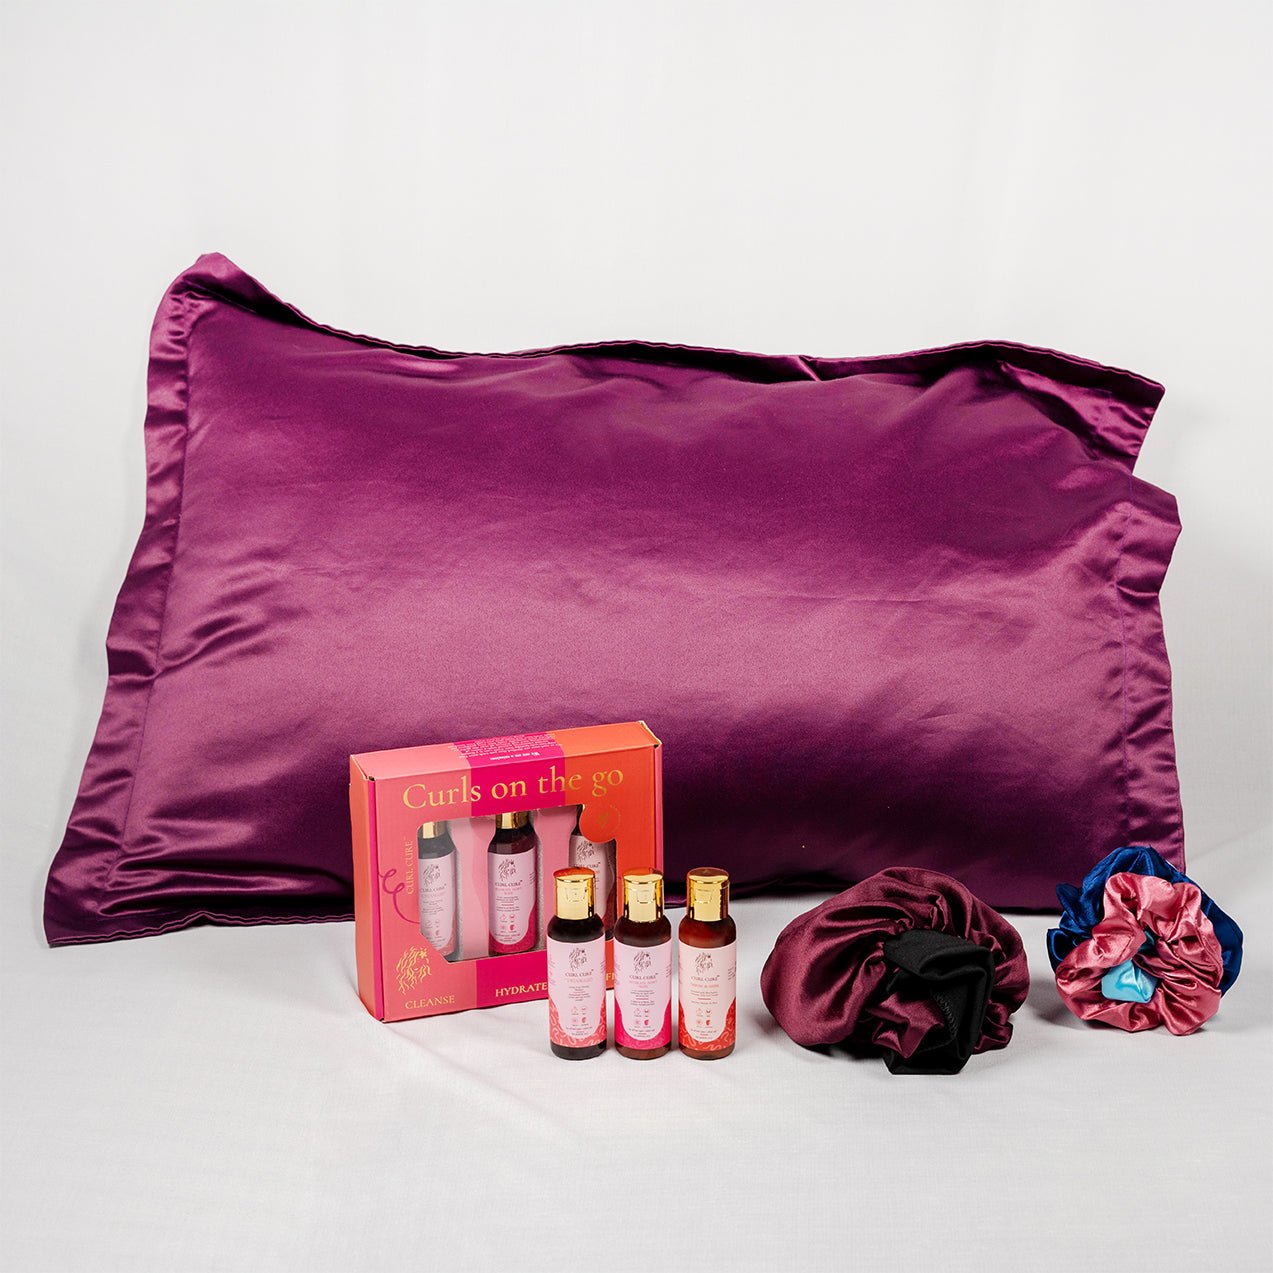 Sleeping kit (Pillowcase- pack of 1, Regular Bonnet, Scrunchie, Travel kit) - Curl Cure